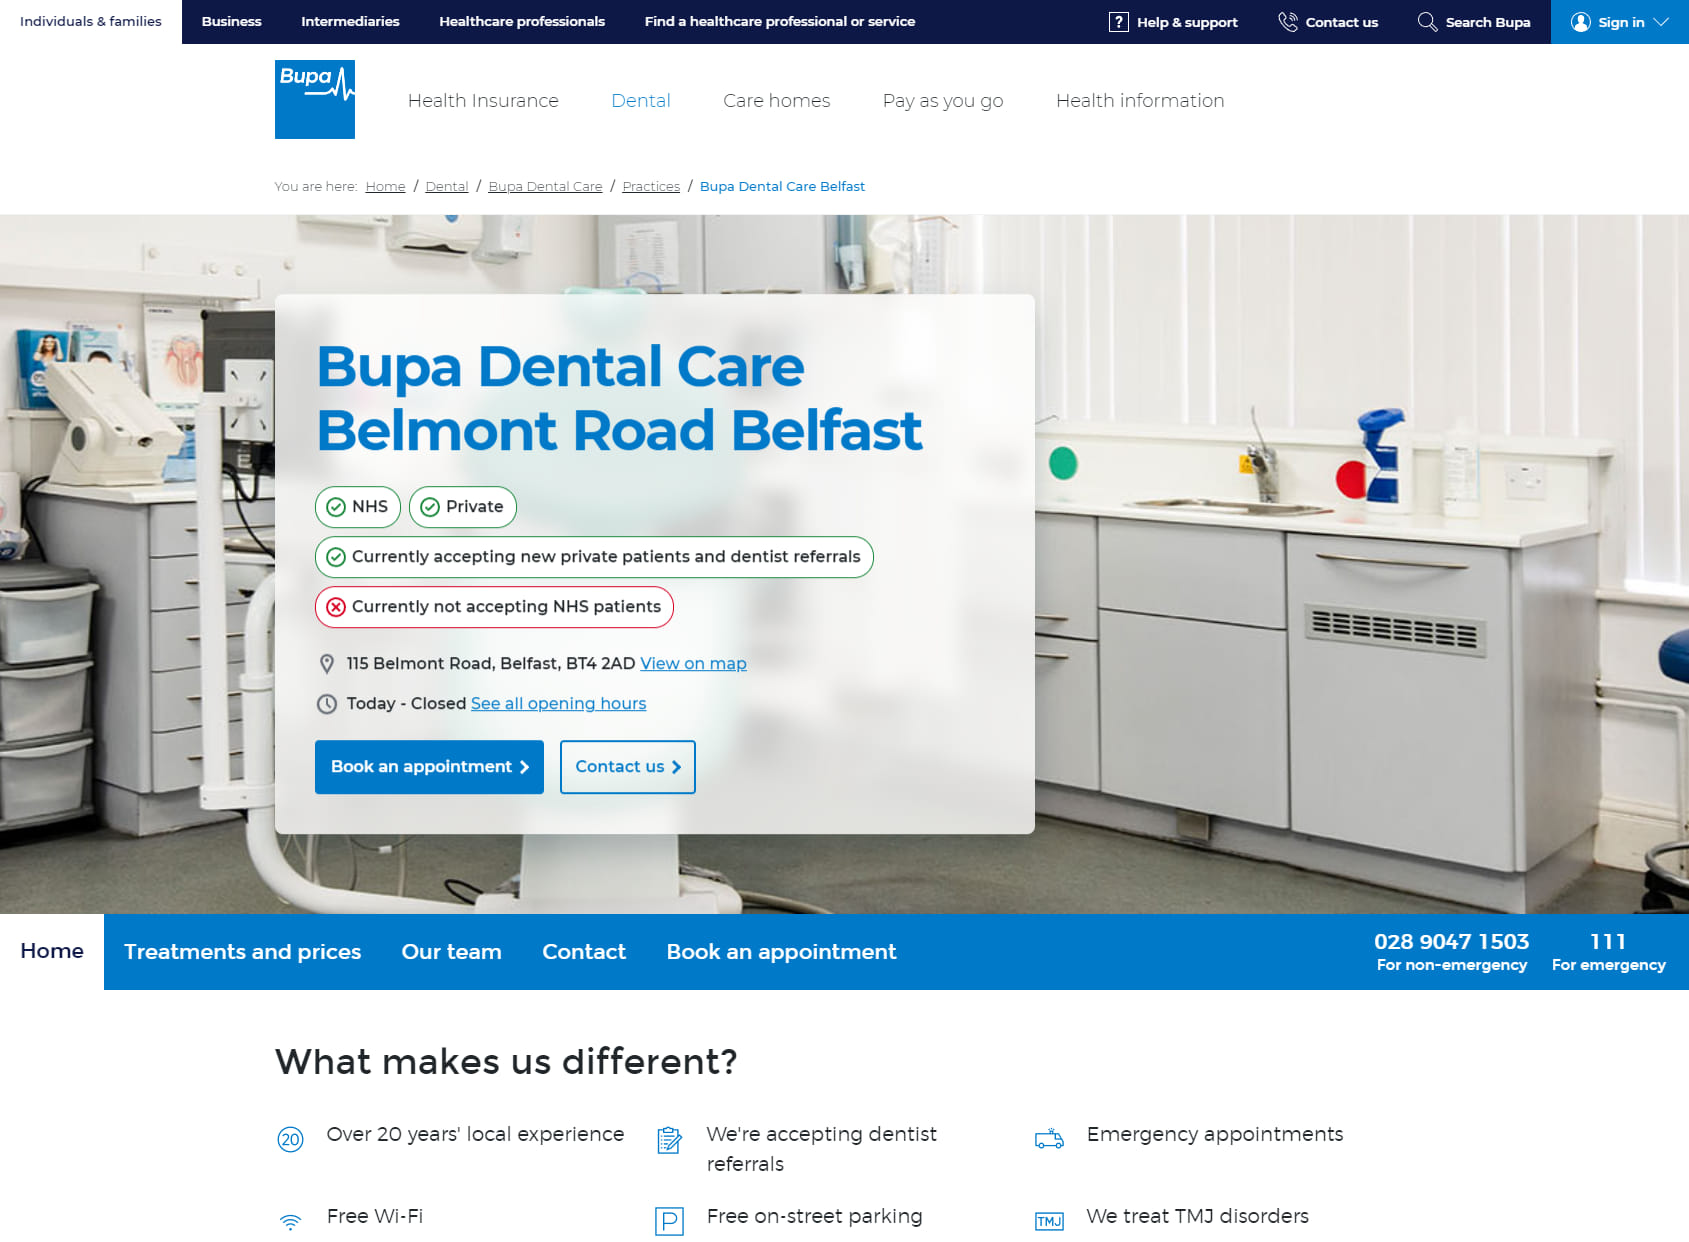 Bupa Dental Care Belmont Road Belfast